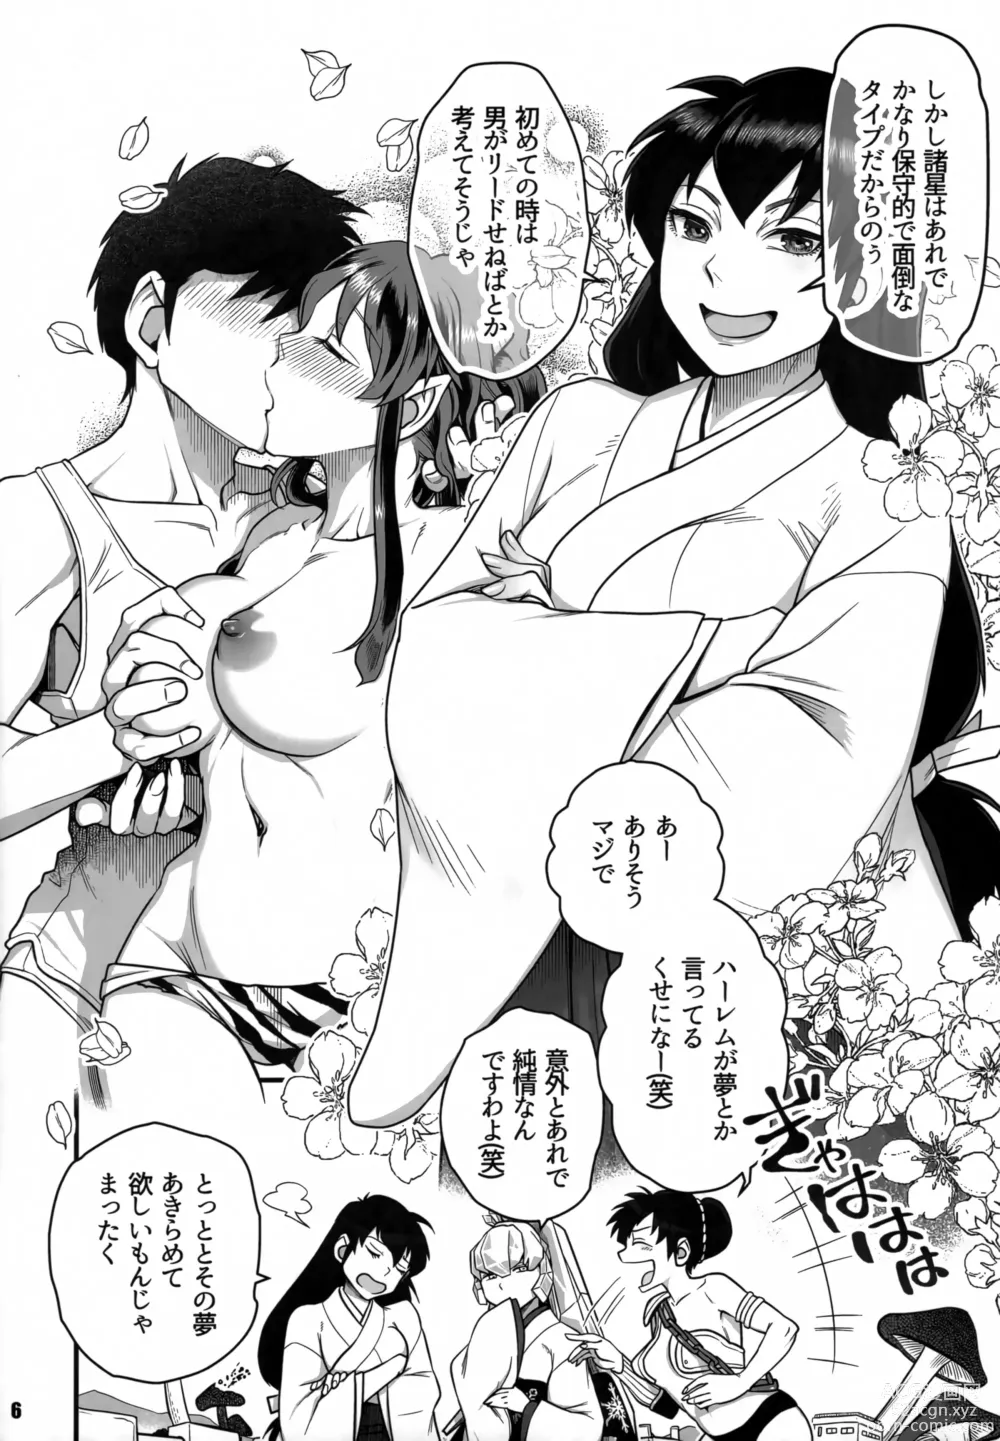 Page 6 of doujinshi Urusei Yatsura Epilogue of Boy meets Girl